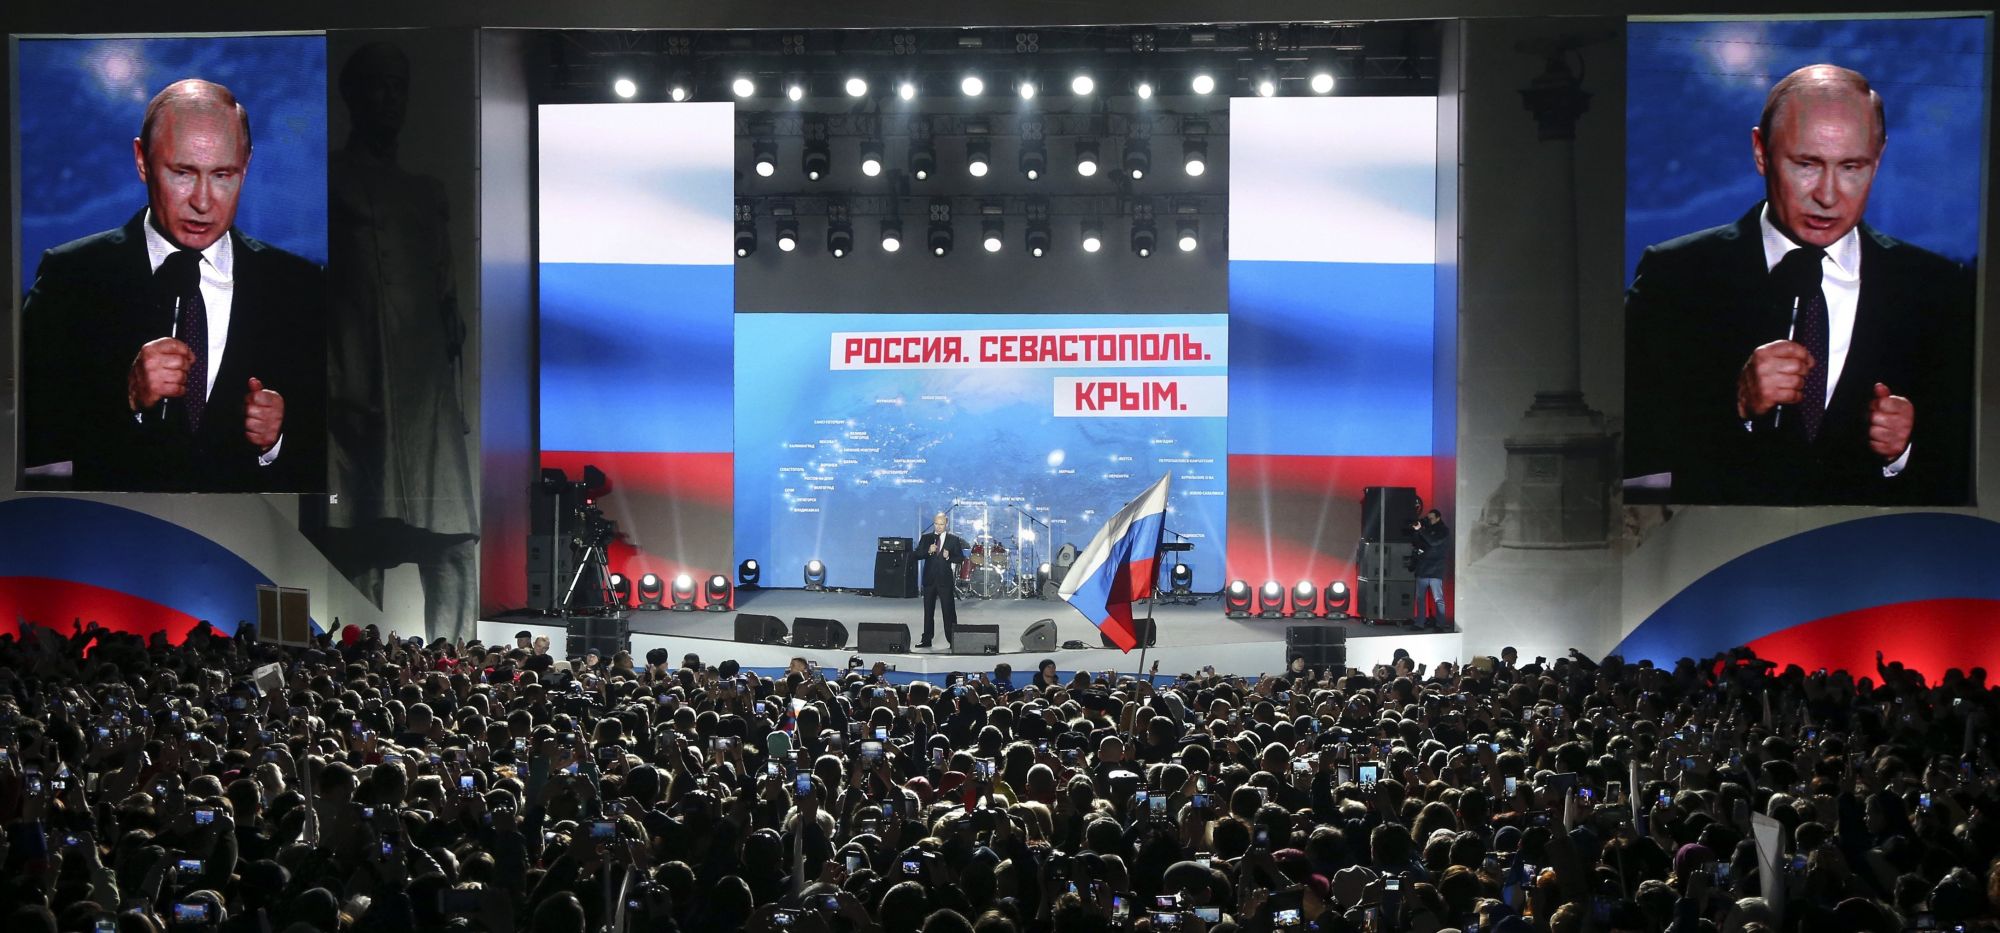 Vlagyimir Putyin orosz államfő választási kampánybeszédet tart a Krím-félsziget Oroszországhoz való csatolásának évfordulója alkalmából tartott koncertek egyike előtt Szevasztopolban 2018. március 14-én. Az oroszországi elnökválasztást március 18-án, a Krím Ukrajnától való elcsatolásának negyedik évfordulóján tartják. (MTI/EPA/Szergej Csirikov)